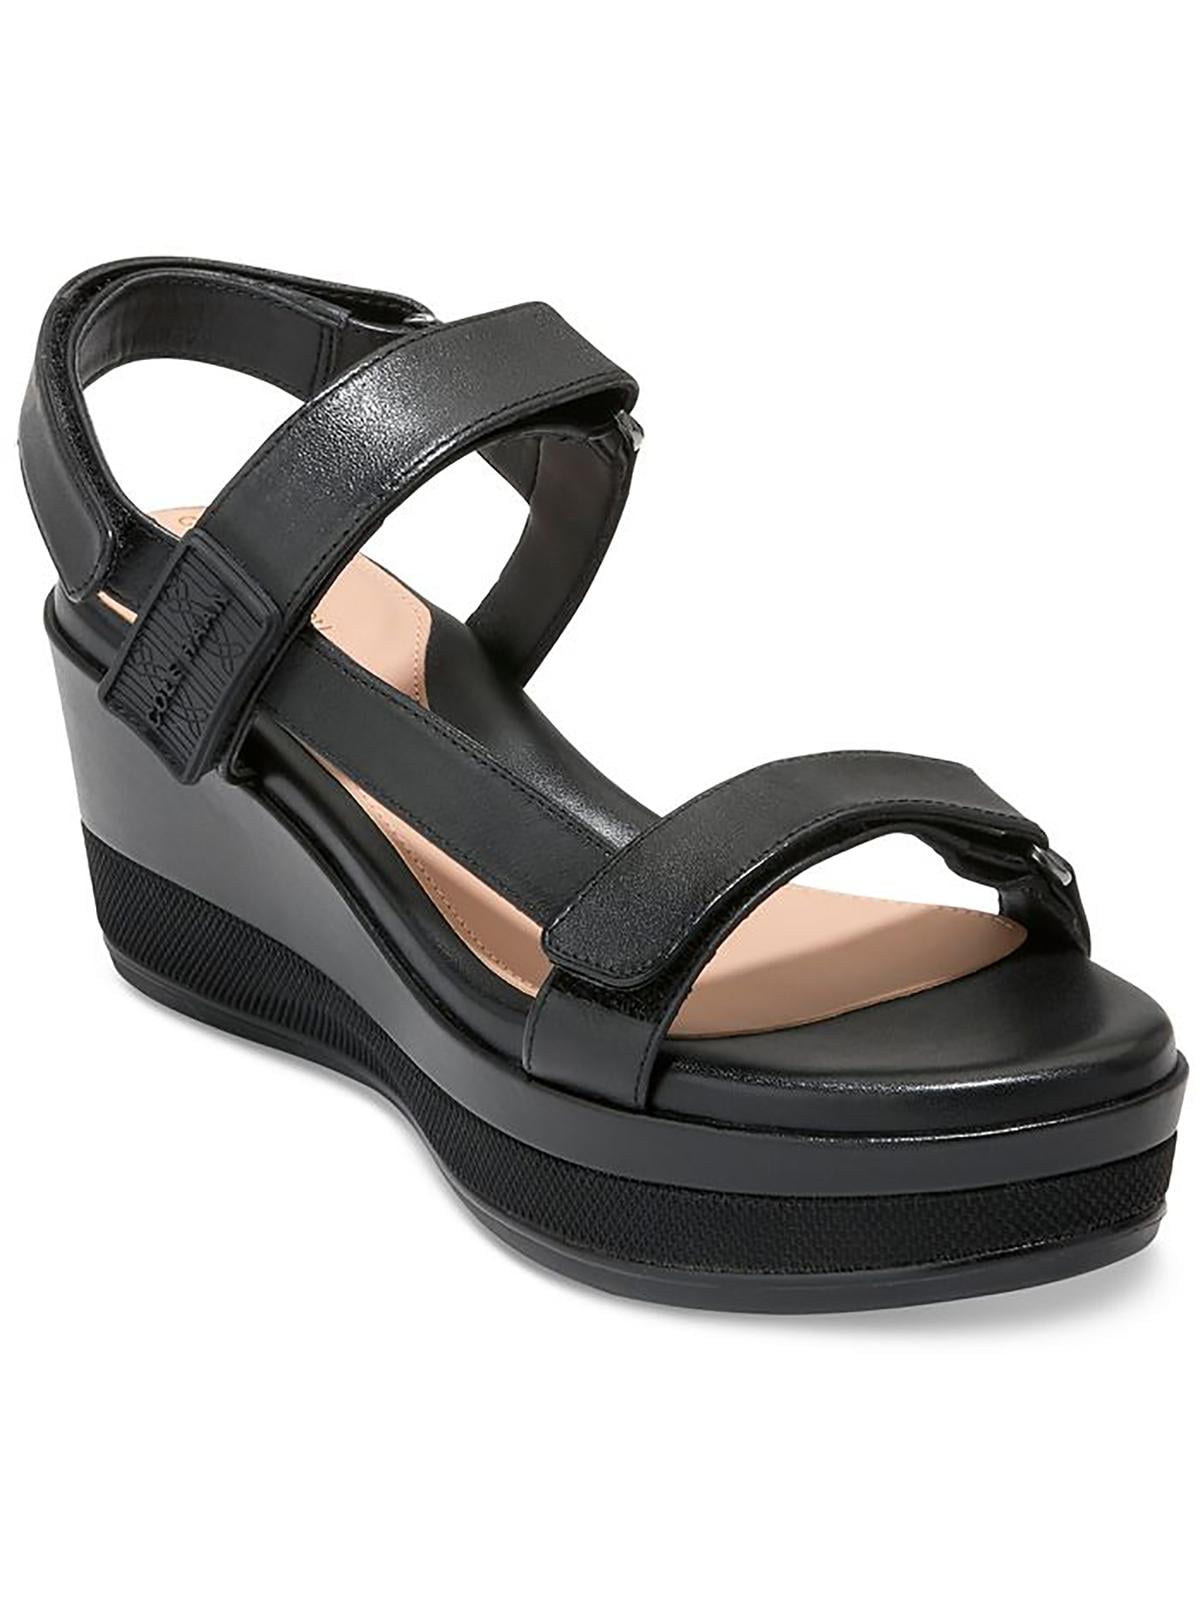 Natural Sandals - Flatform Sandals - Slide Sandals - Sandals - Lulus